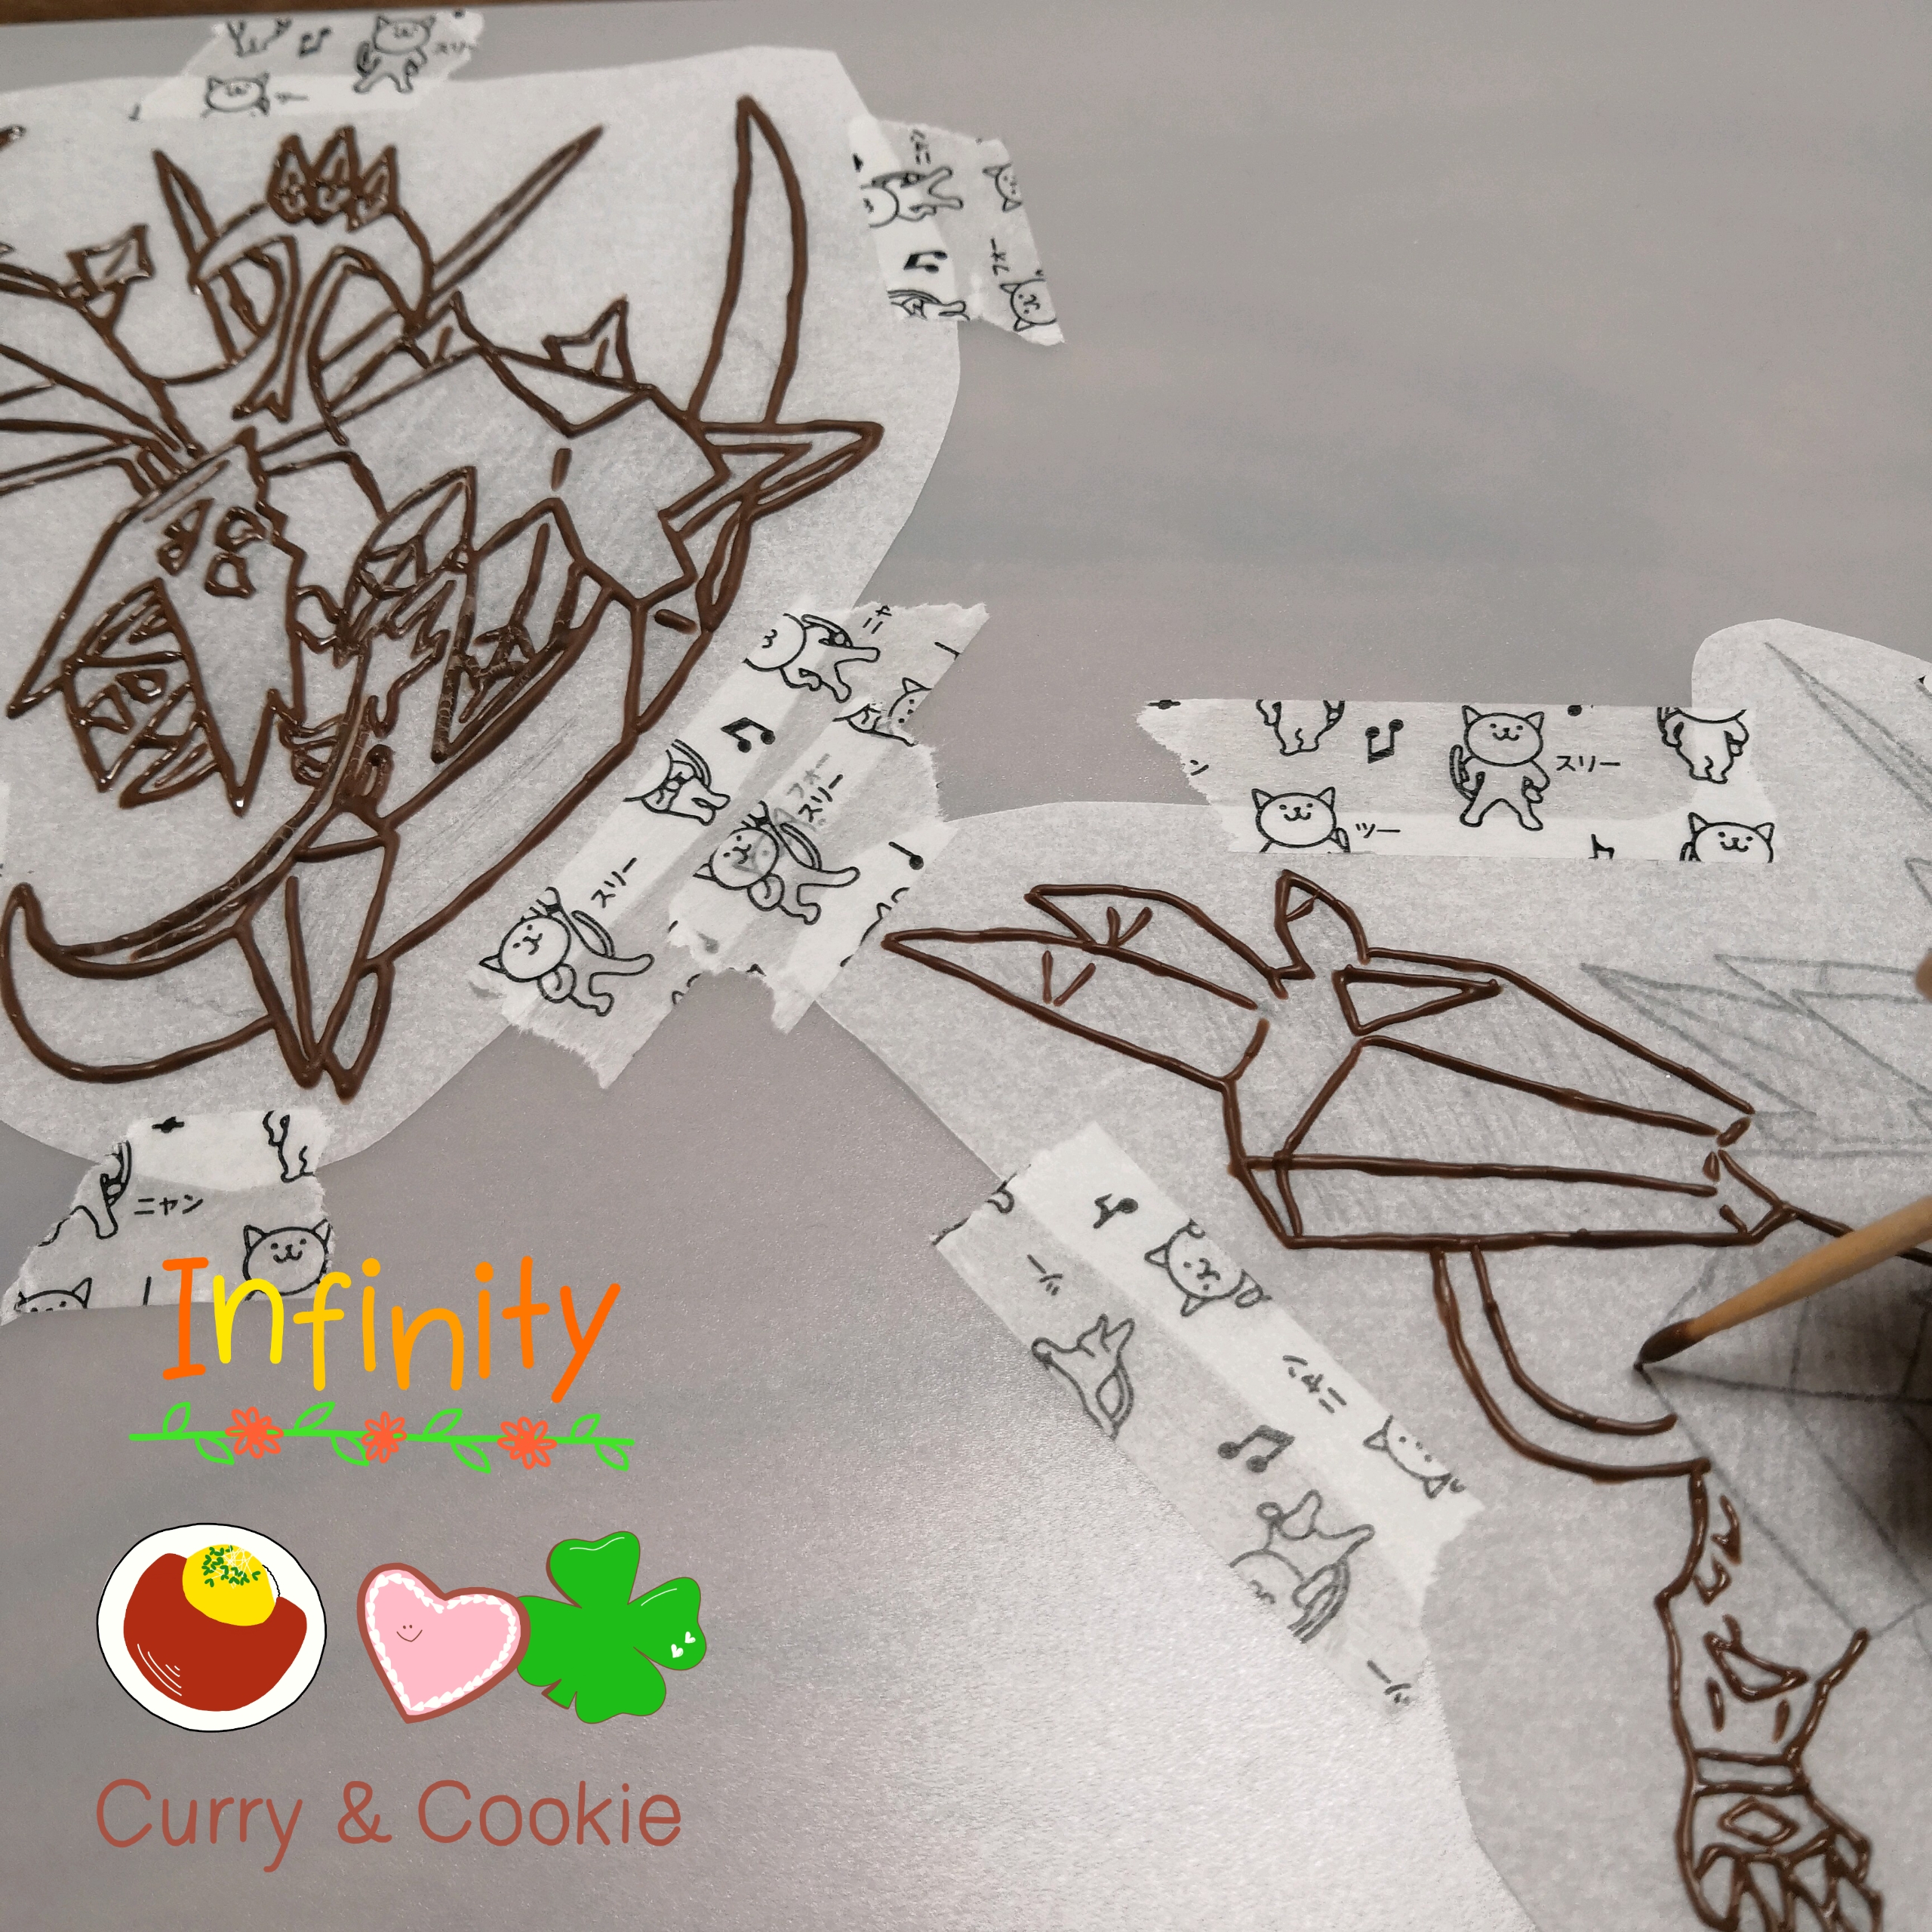 キャラチョコをキレイに作るコツ 我流 Infinity カレーとクッキーのお店